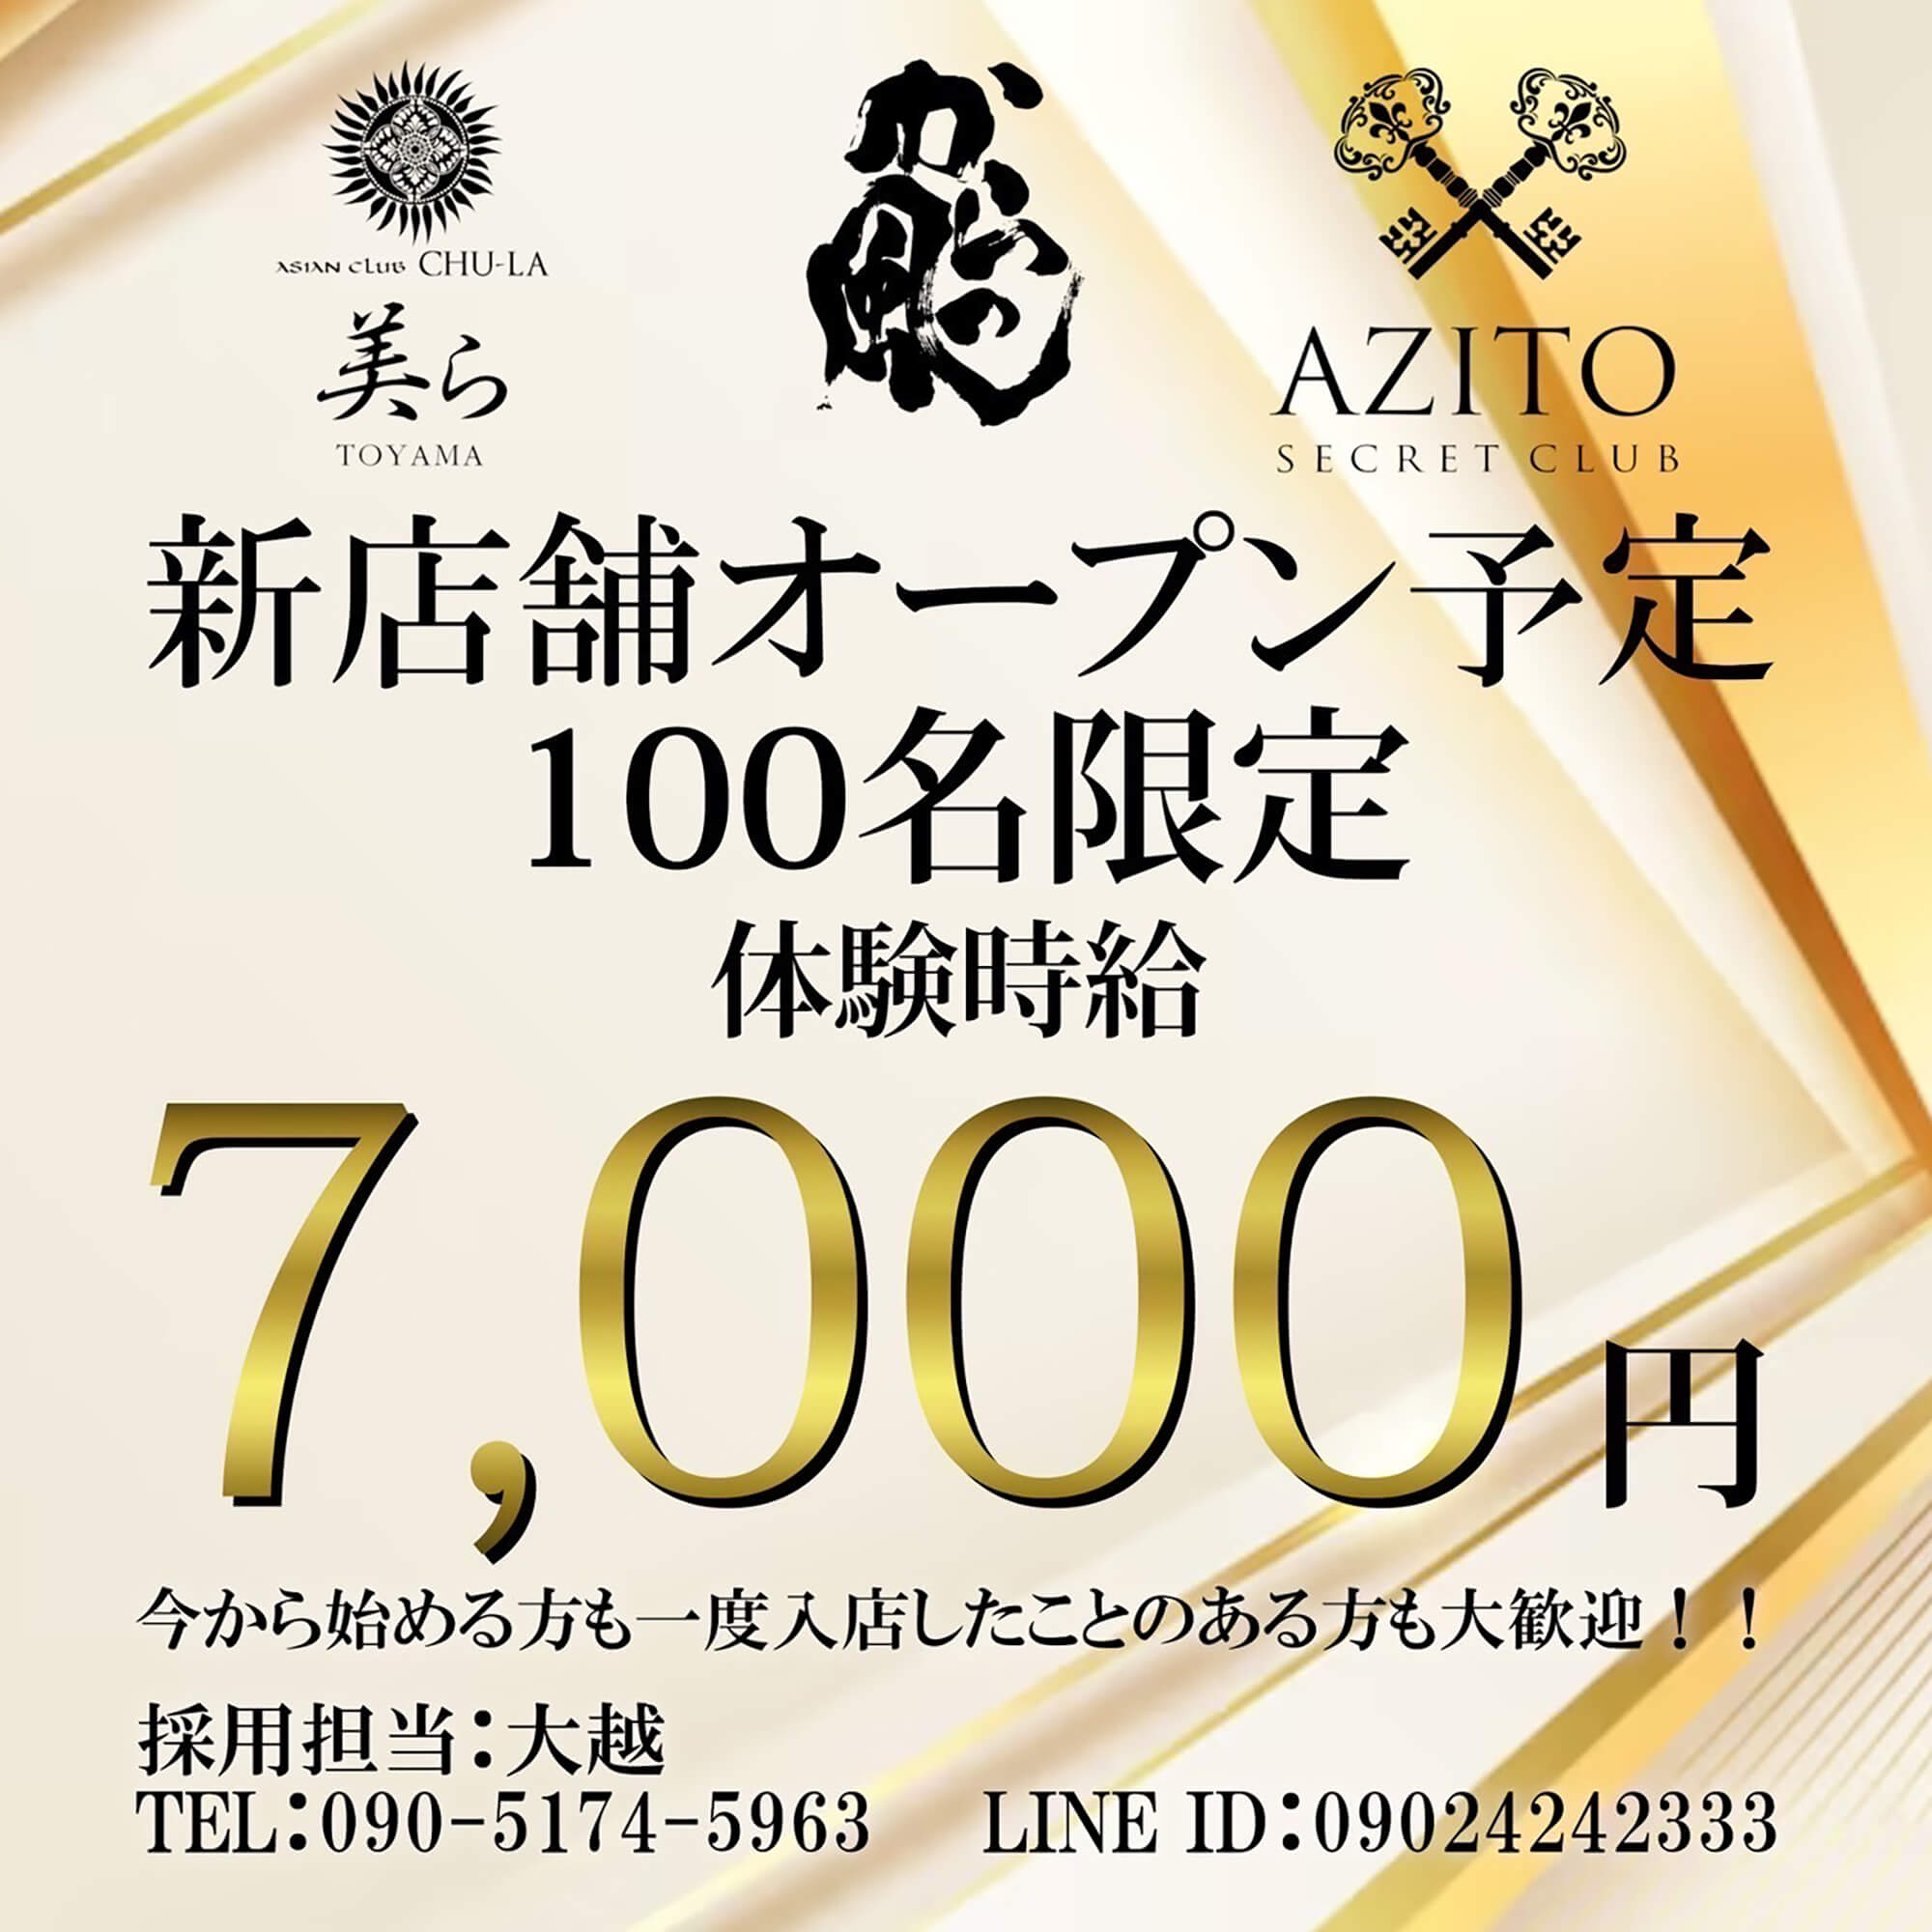 富山キャバクラ「SECRET CLUB AZITO」ショップニュース